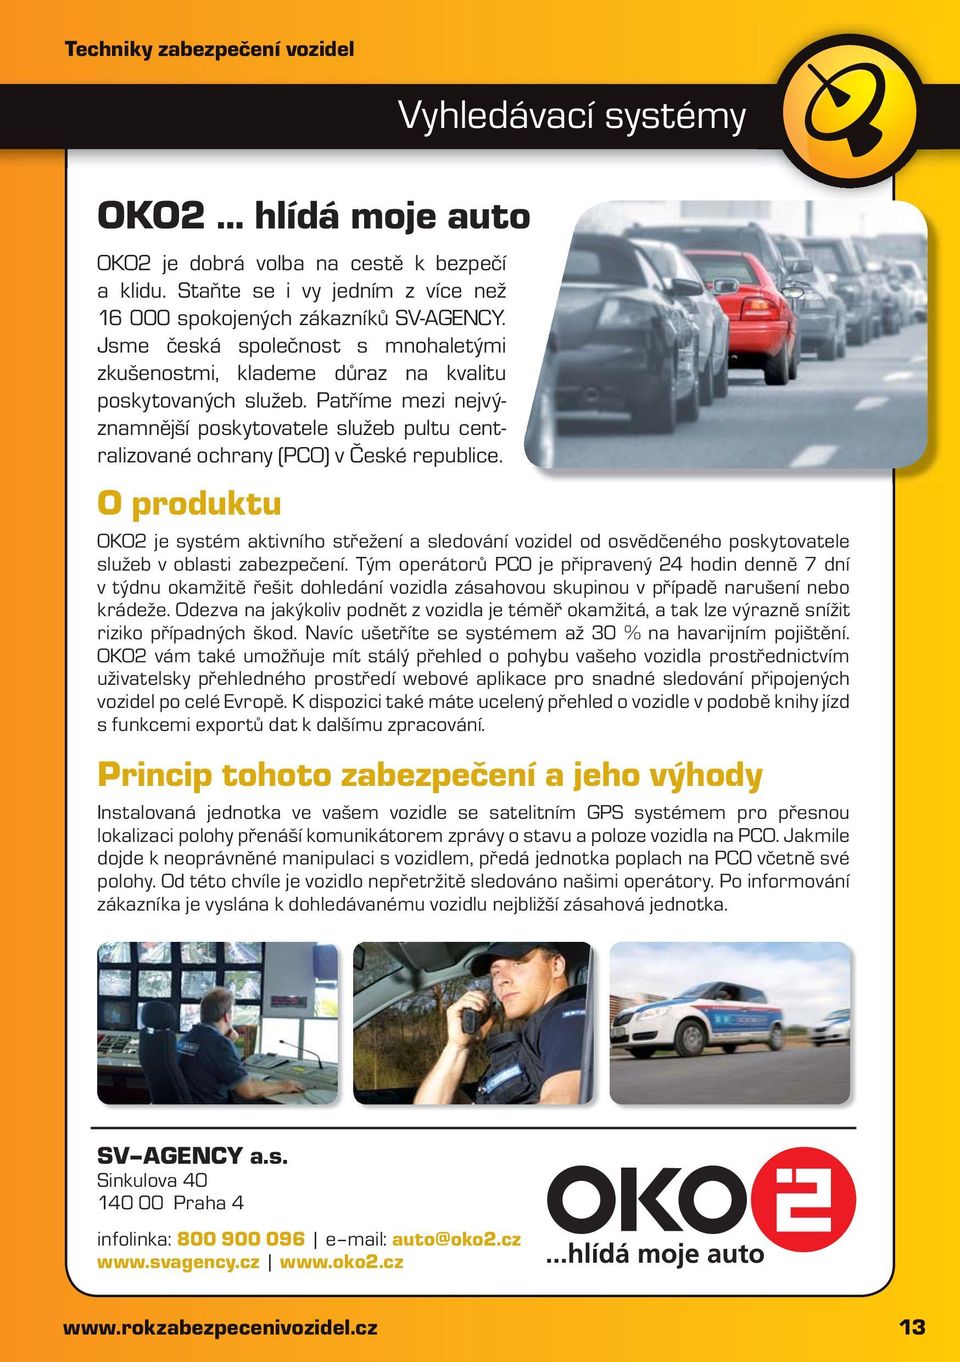 O produktu Vyhledávací systémy OKO2 je systém aktivního střežení a sledování vozidel od osvědčeného poskytovatele služeb v oblasti zabezpečení.